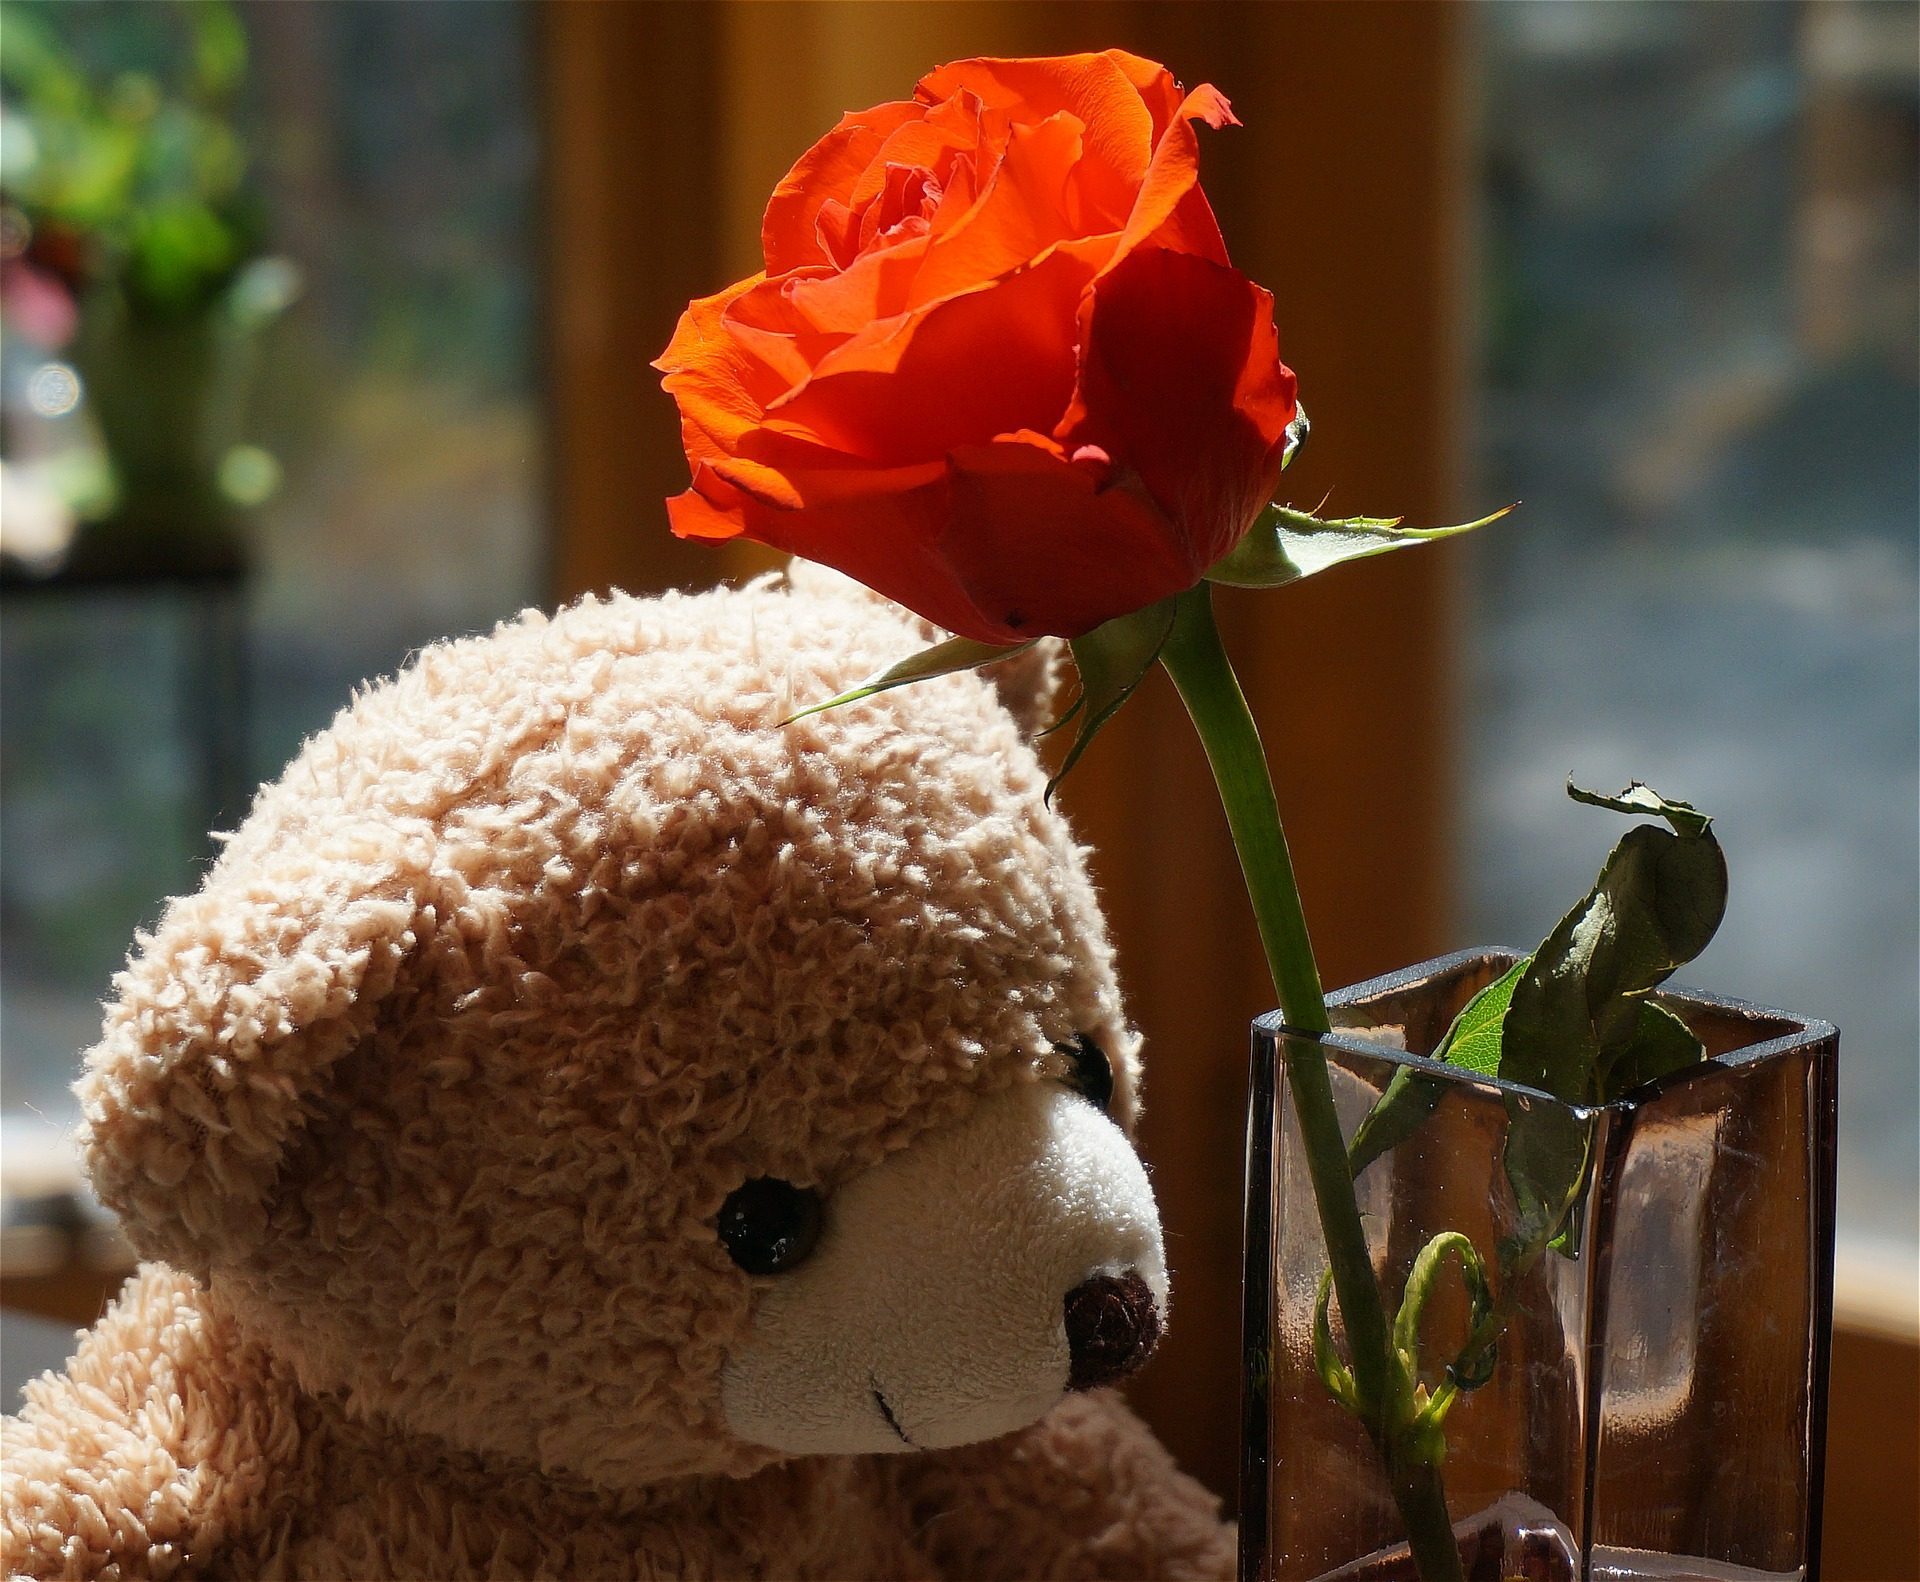 teddy bear wallpapers with flowers,cut flowers,stuffed toy,teddy bear,flower,rose